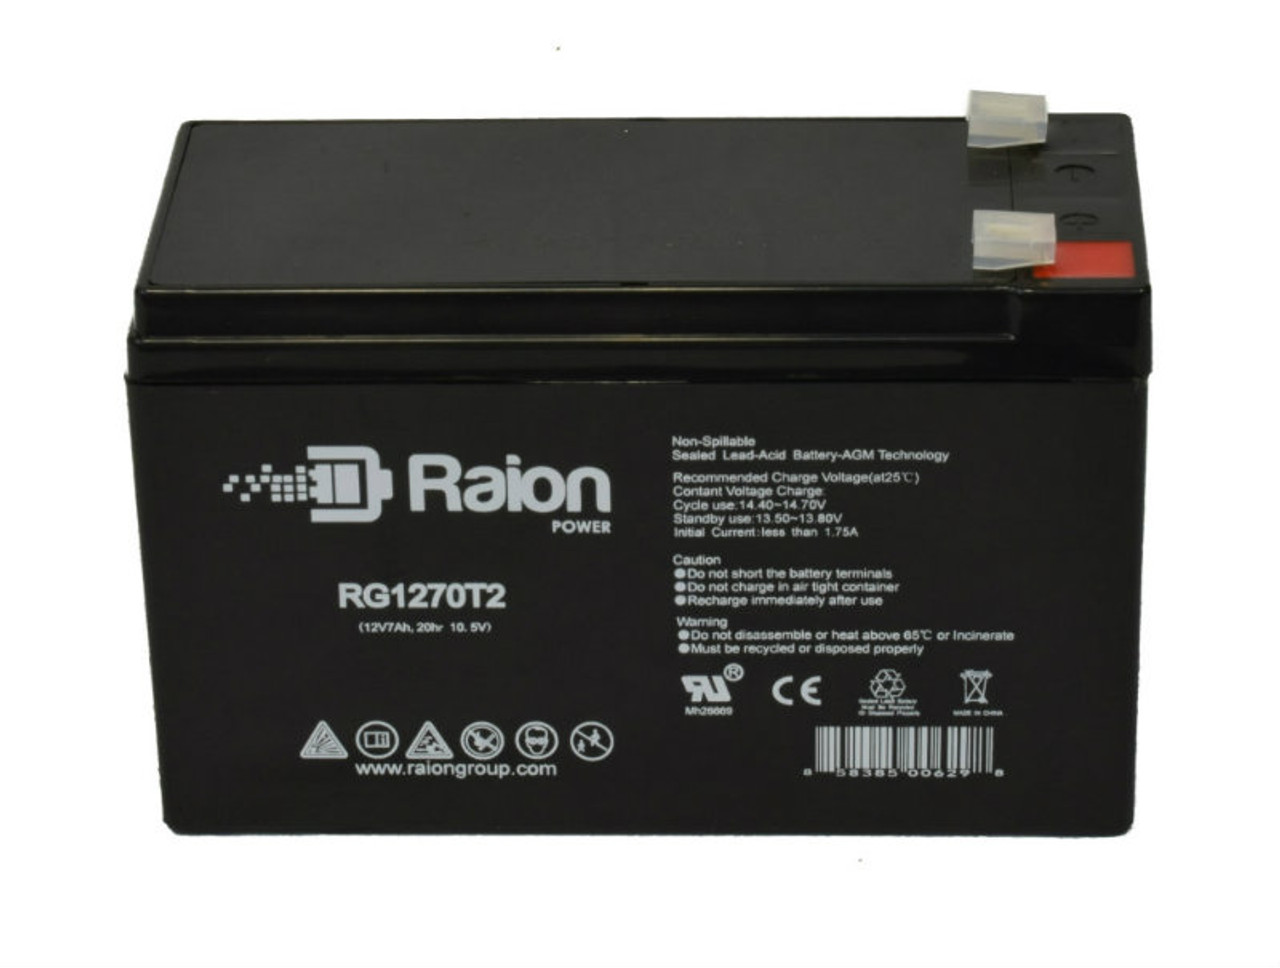 Raion Power RG1270T1 12V 7Ah Lead Acid Battery for McGaw 9510 Cardiac Output Computer